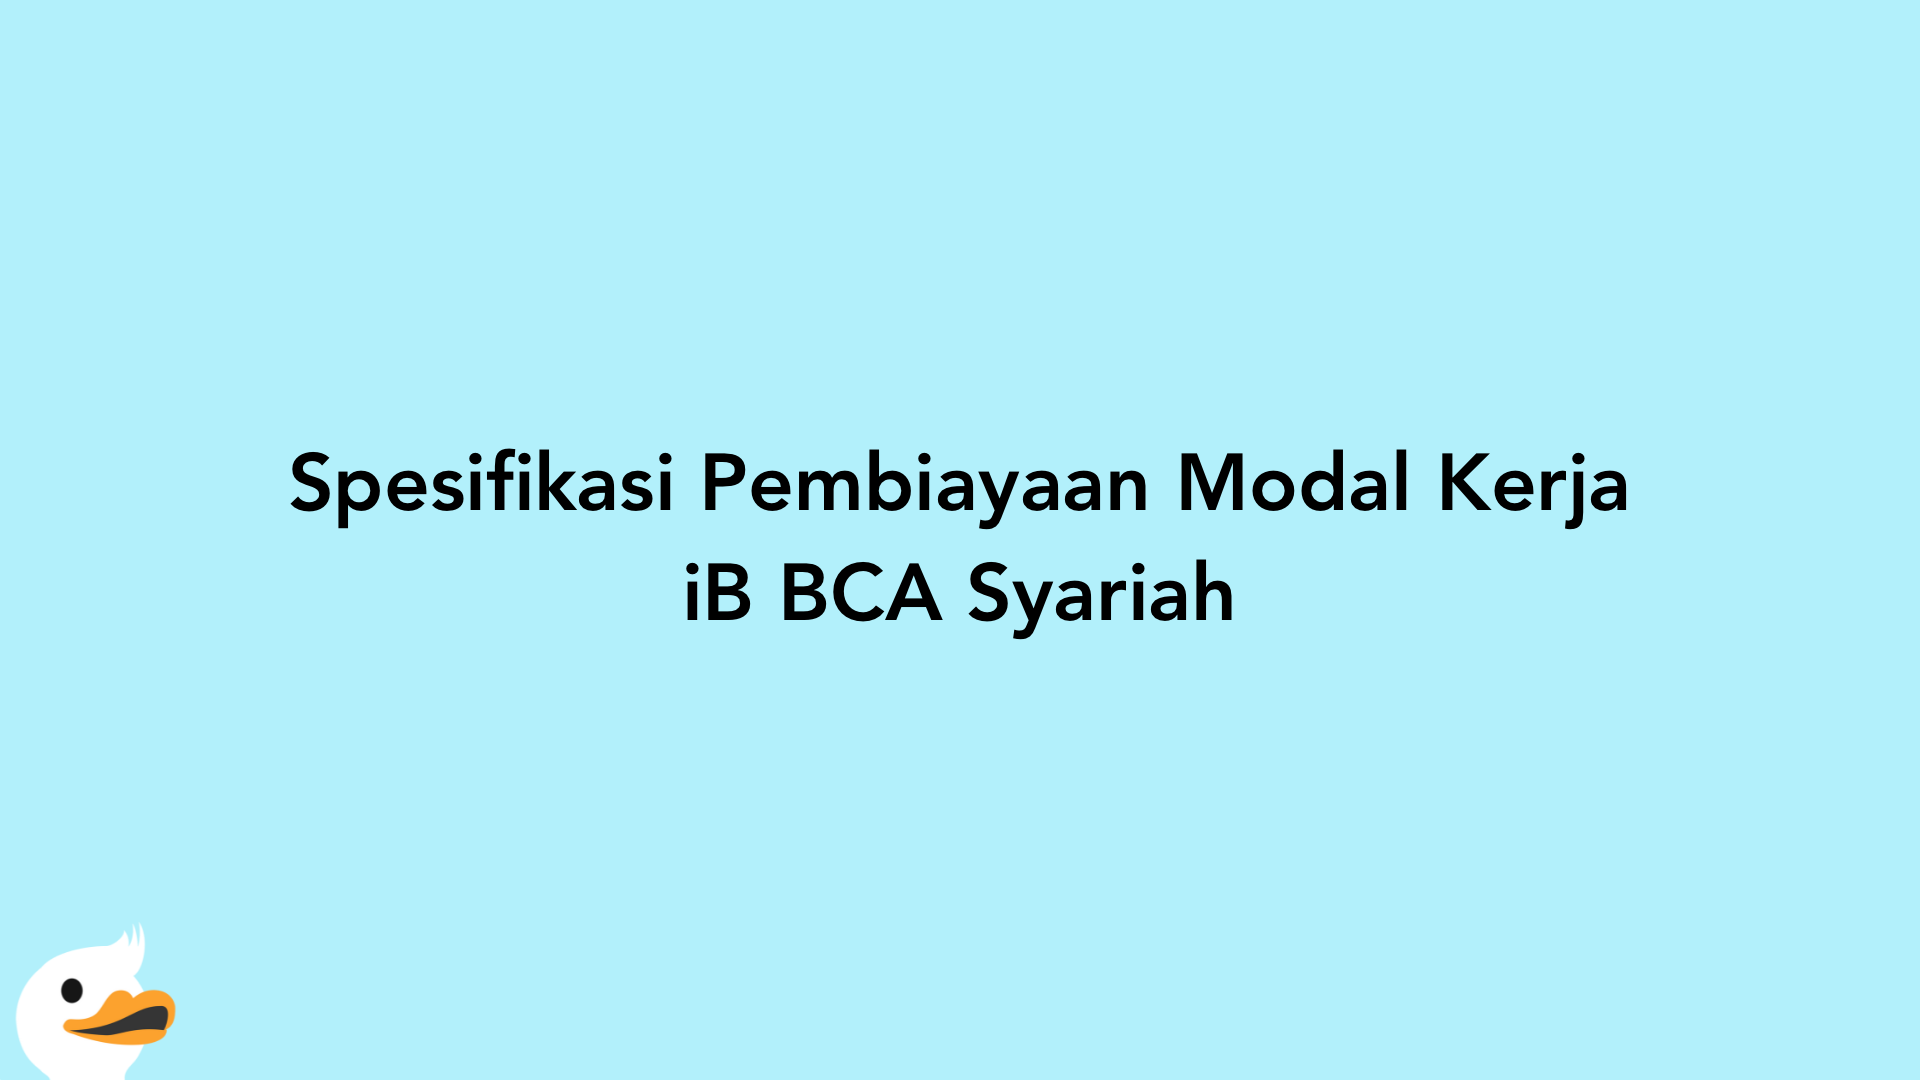 Spesifikasi Pembiayaan Modal Kerja iB BCA Syariah